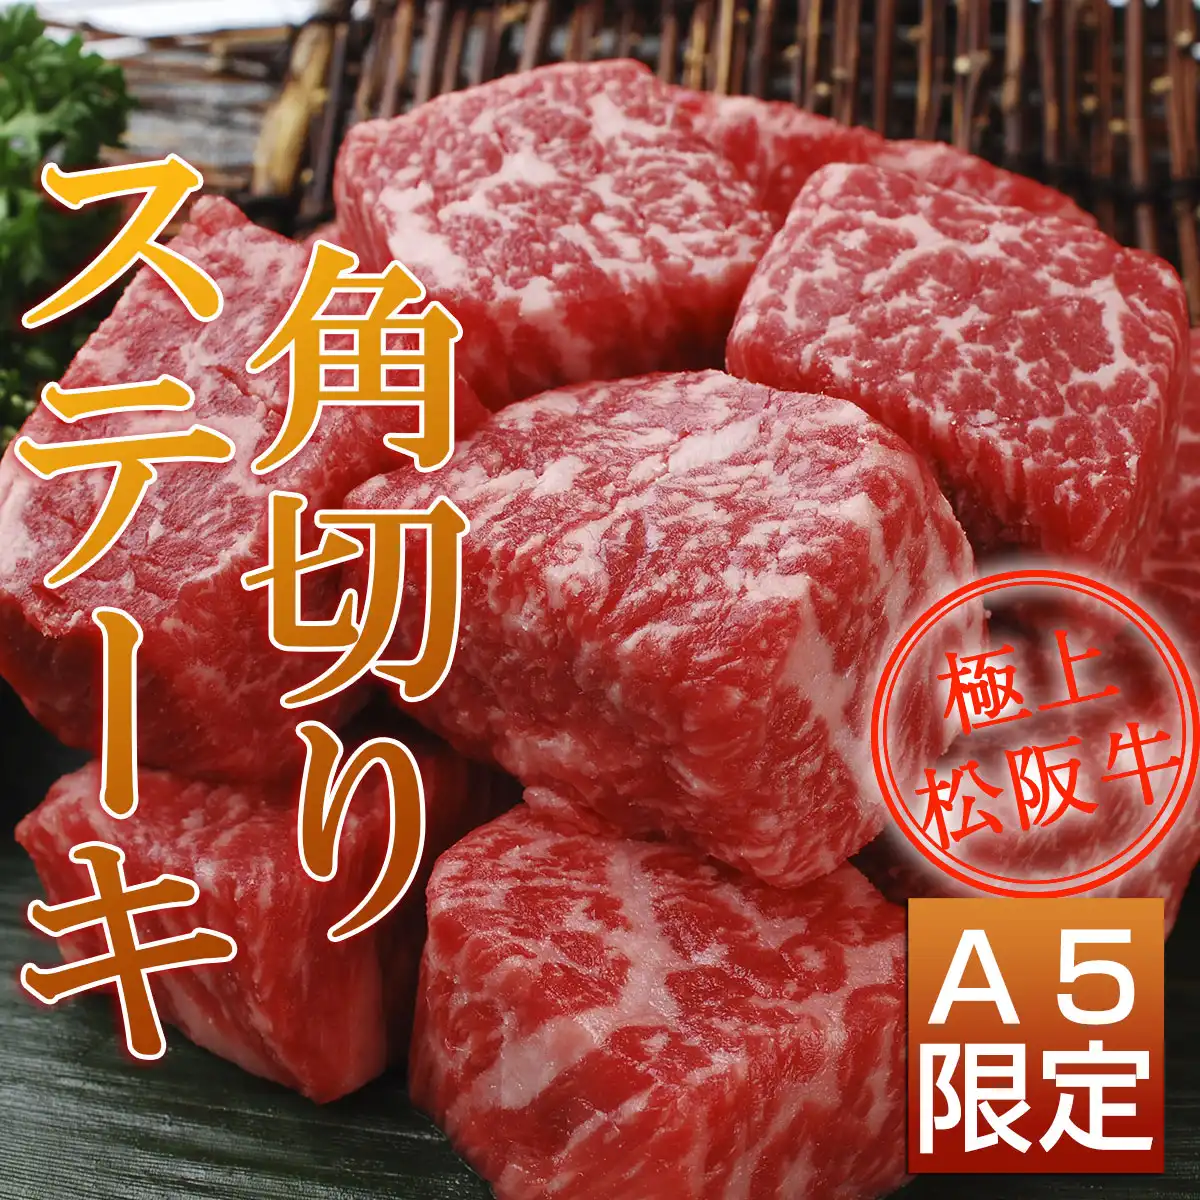 松阪牛ステーキ食べ比べ4点SILVER（シンシン・トモサン・ダイヤ・角切り）